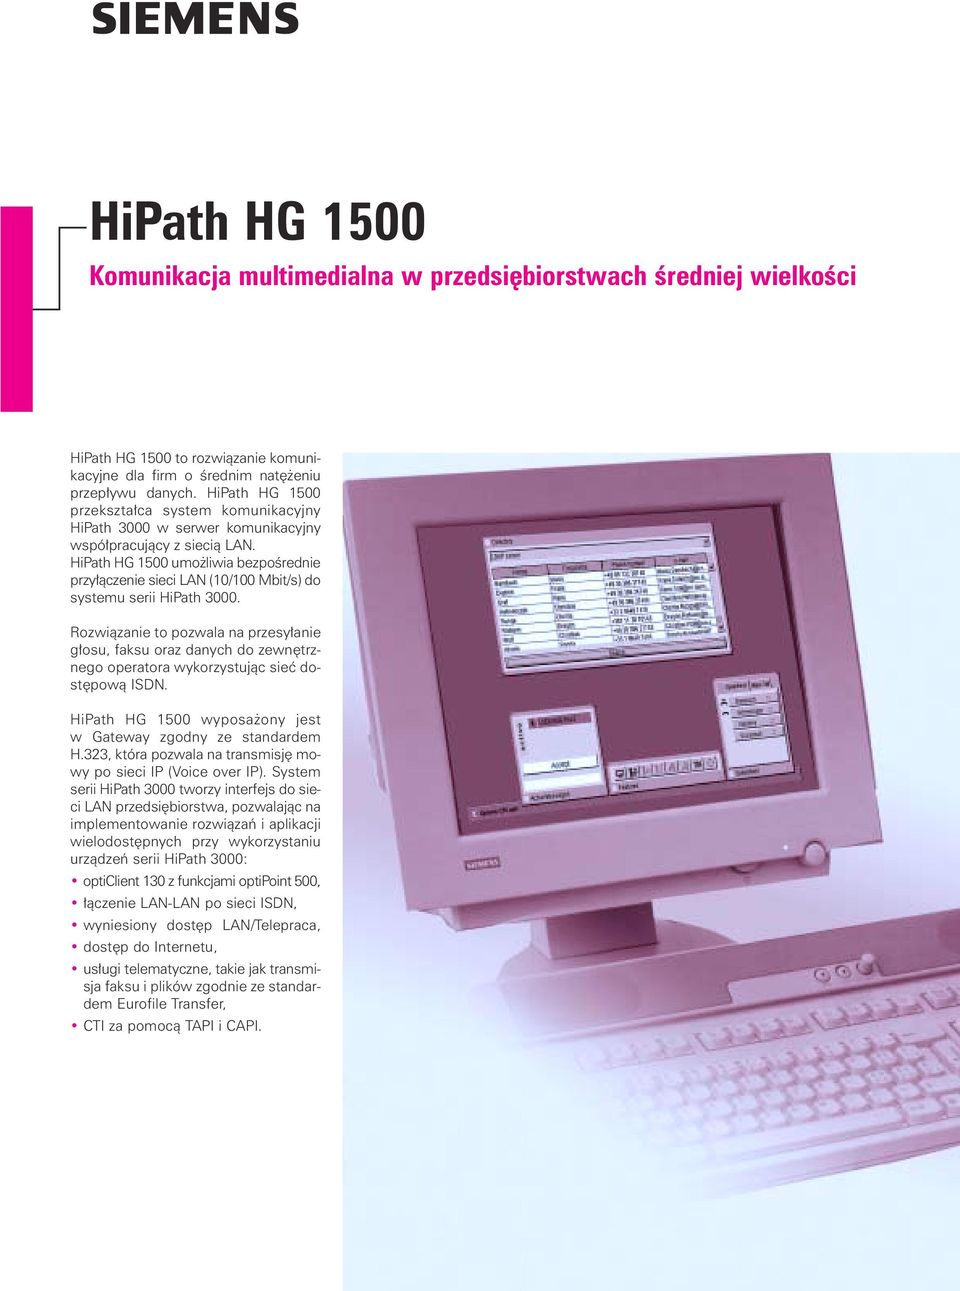 HiPath HG 1500 umo liwia bezpoêrednie przy àczenie sieci LAN (10/100 Mbit/s) do systemu serii HiPath 3000.